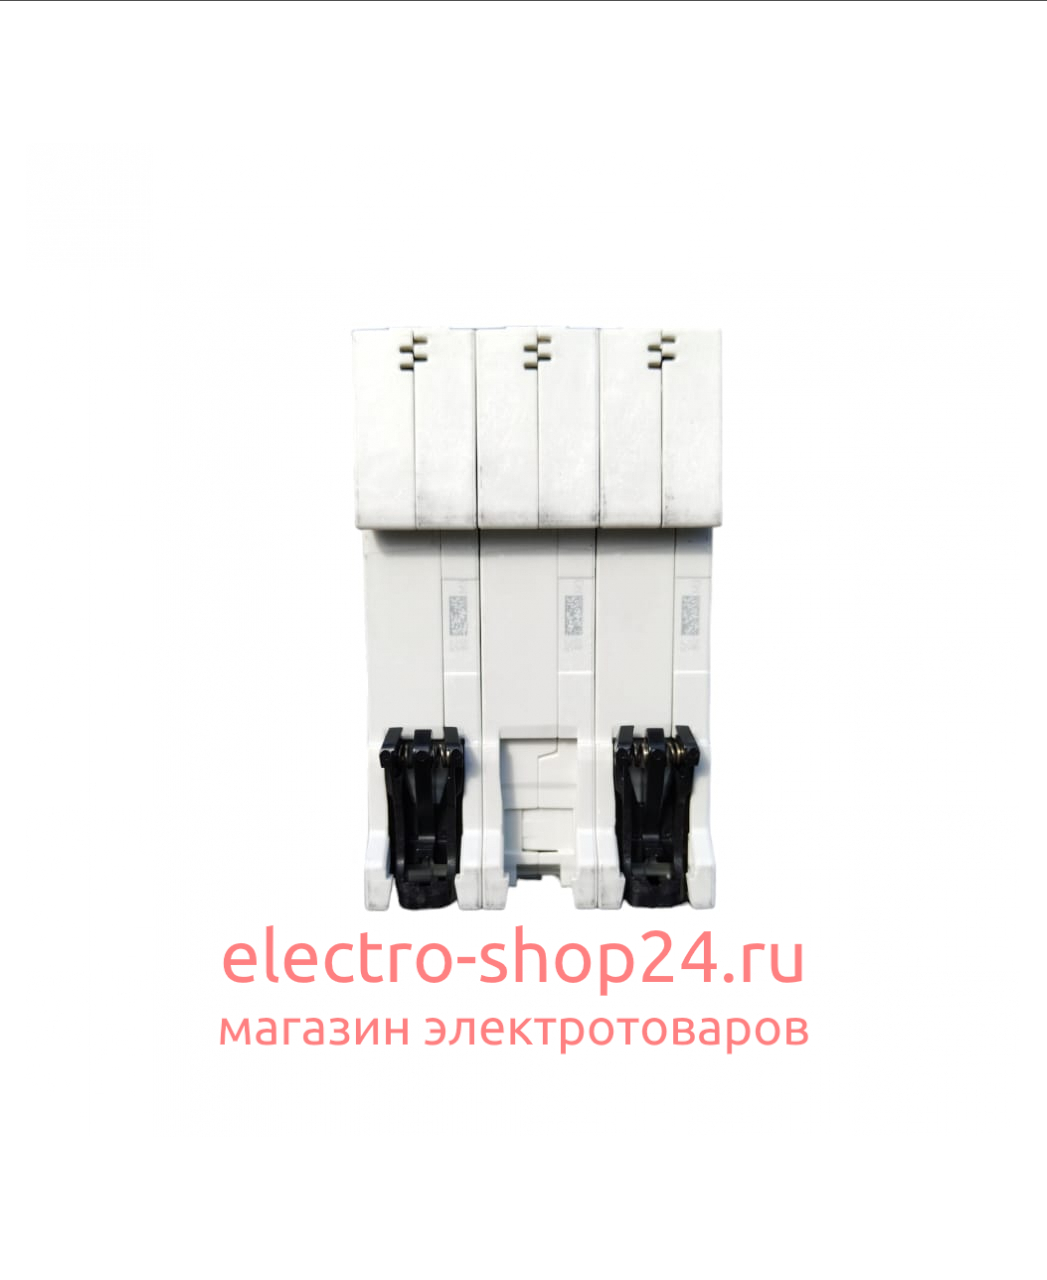 S203 C32 Автоматический выключатель 3-полюсный 32А 6кА (хар-ка C) ABB 2CDS253001R0324 2CDS253001R0324 - магазин электротехники Electroshop